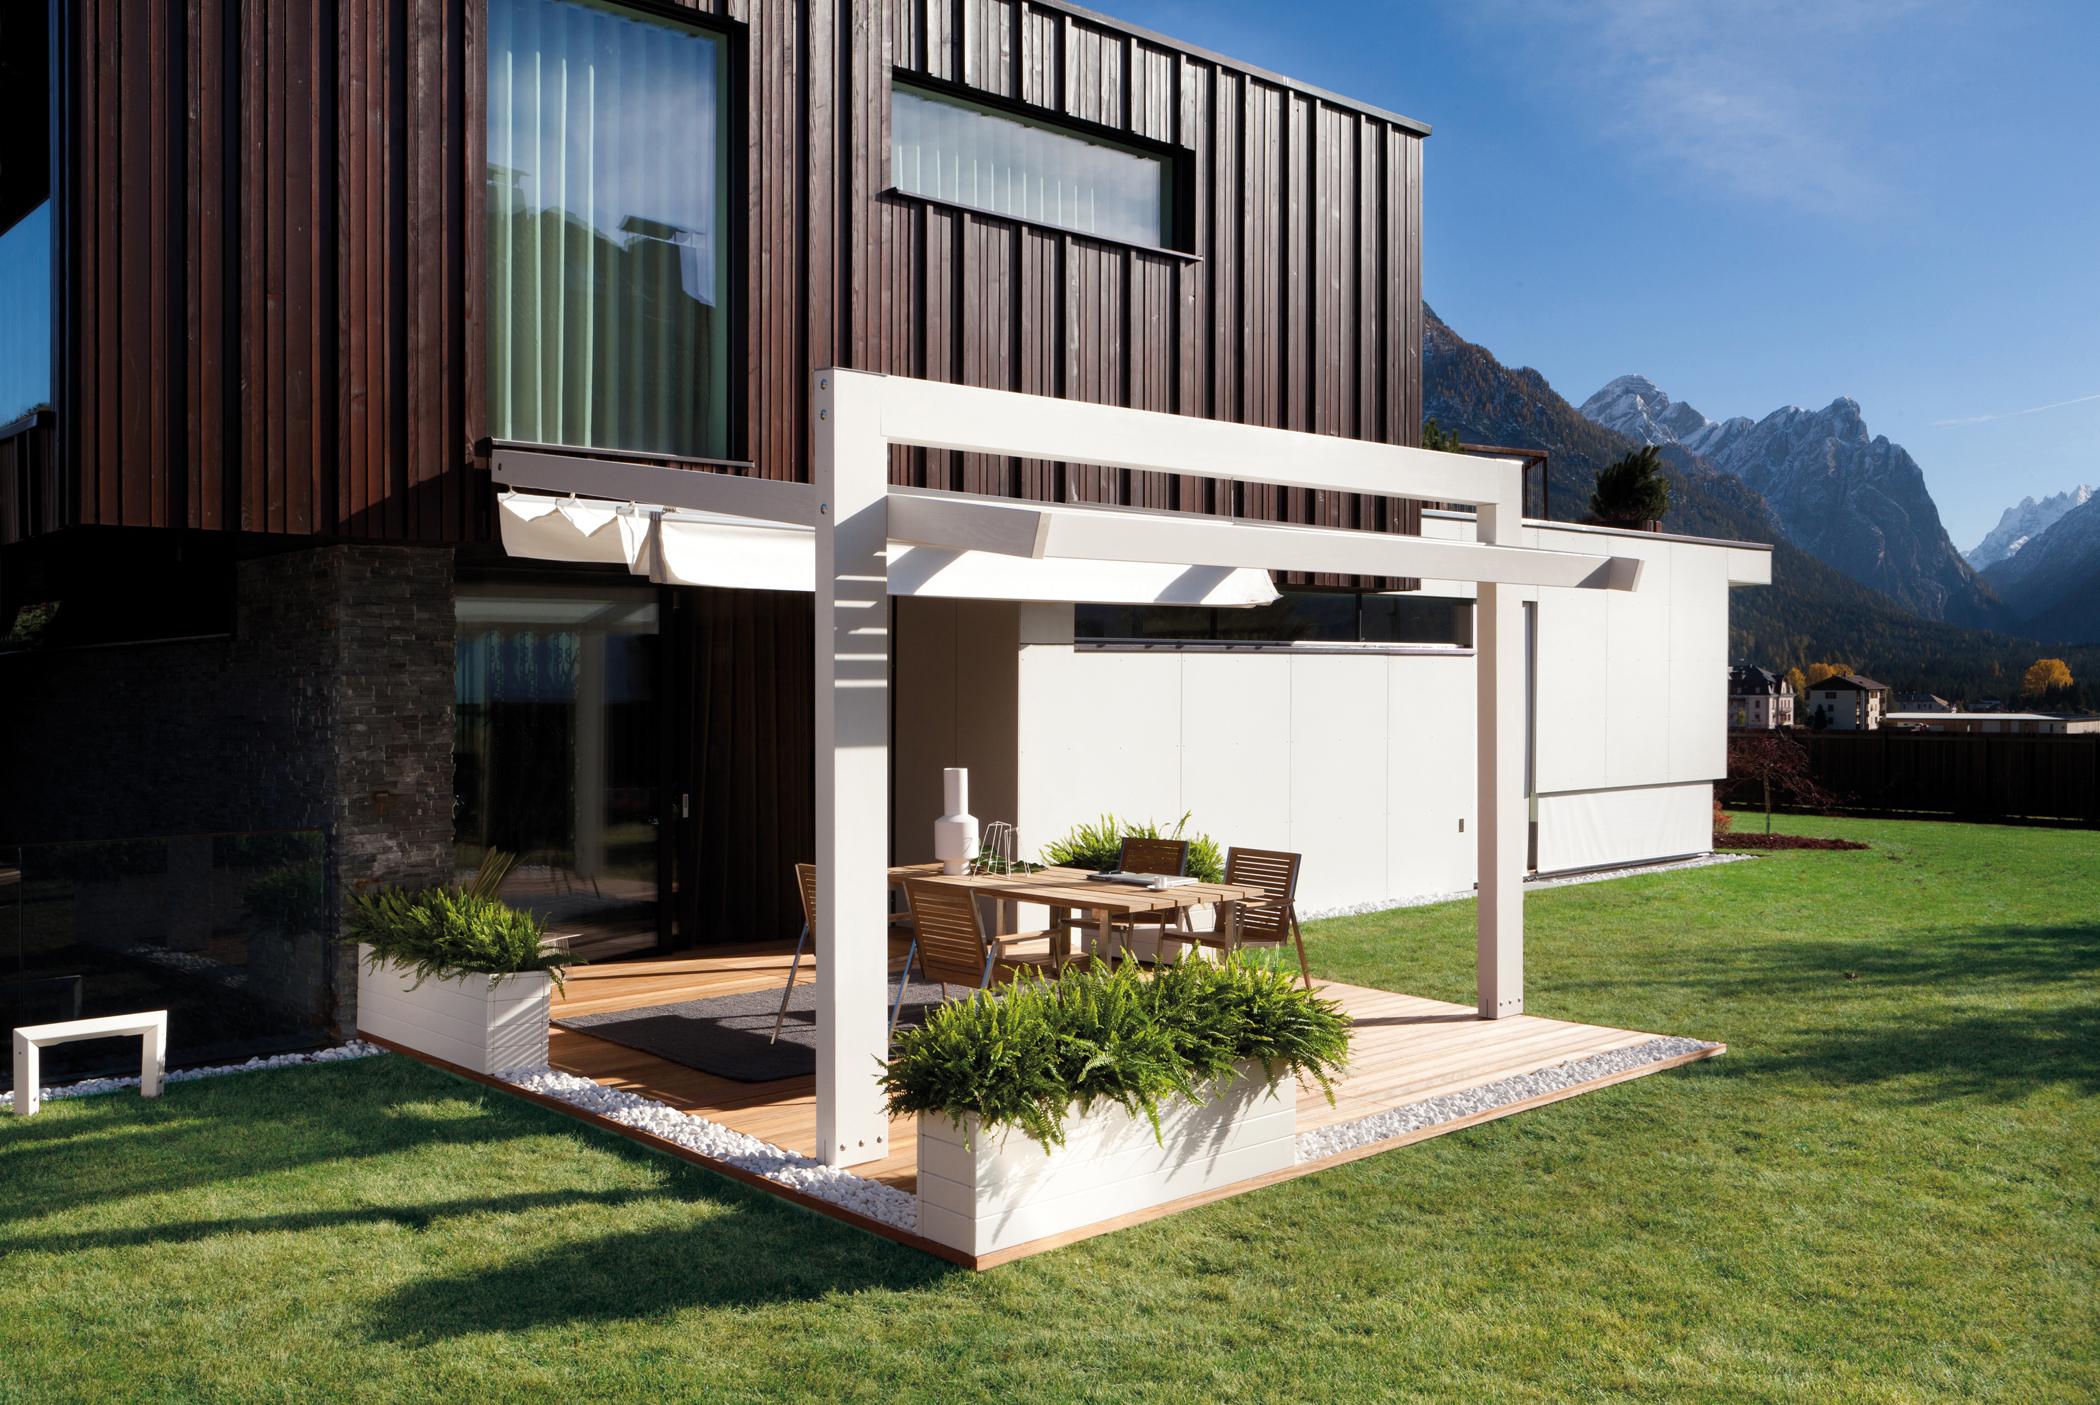 Terrasse mit moderner Markise #terrasse #terrassendielen #terrassengestaltung ©Pircher